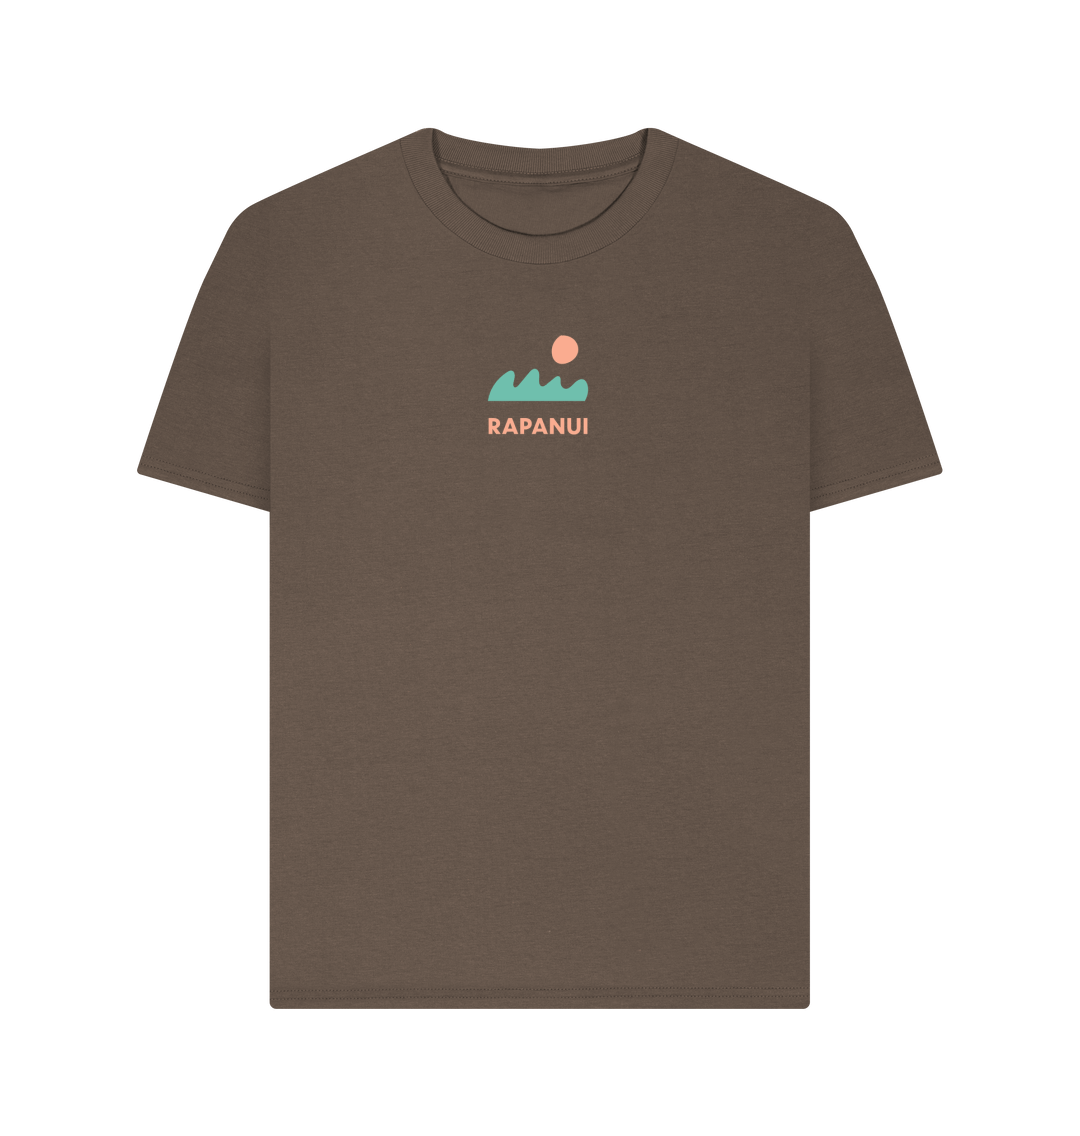 Women's Evening Haze T - Shirt - Printed T - shirt